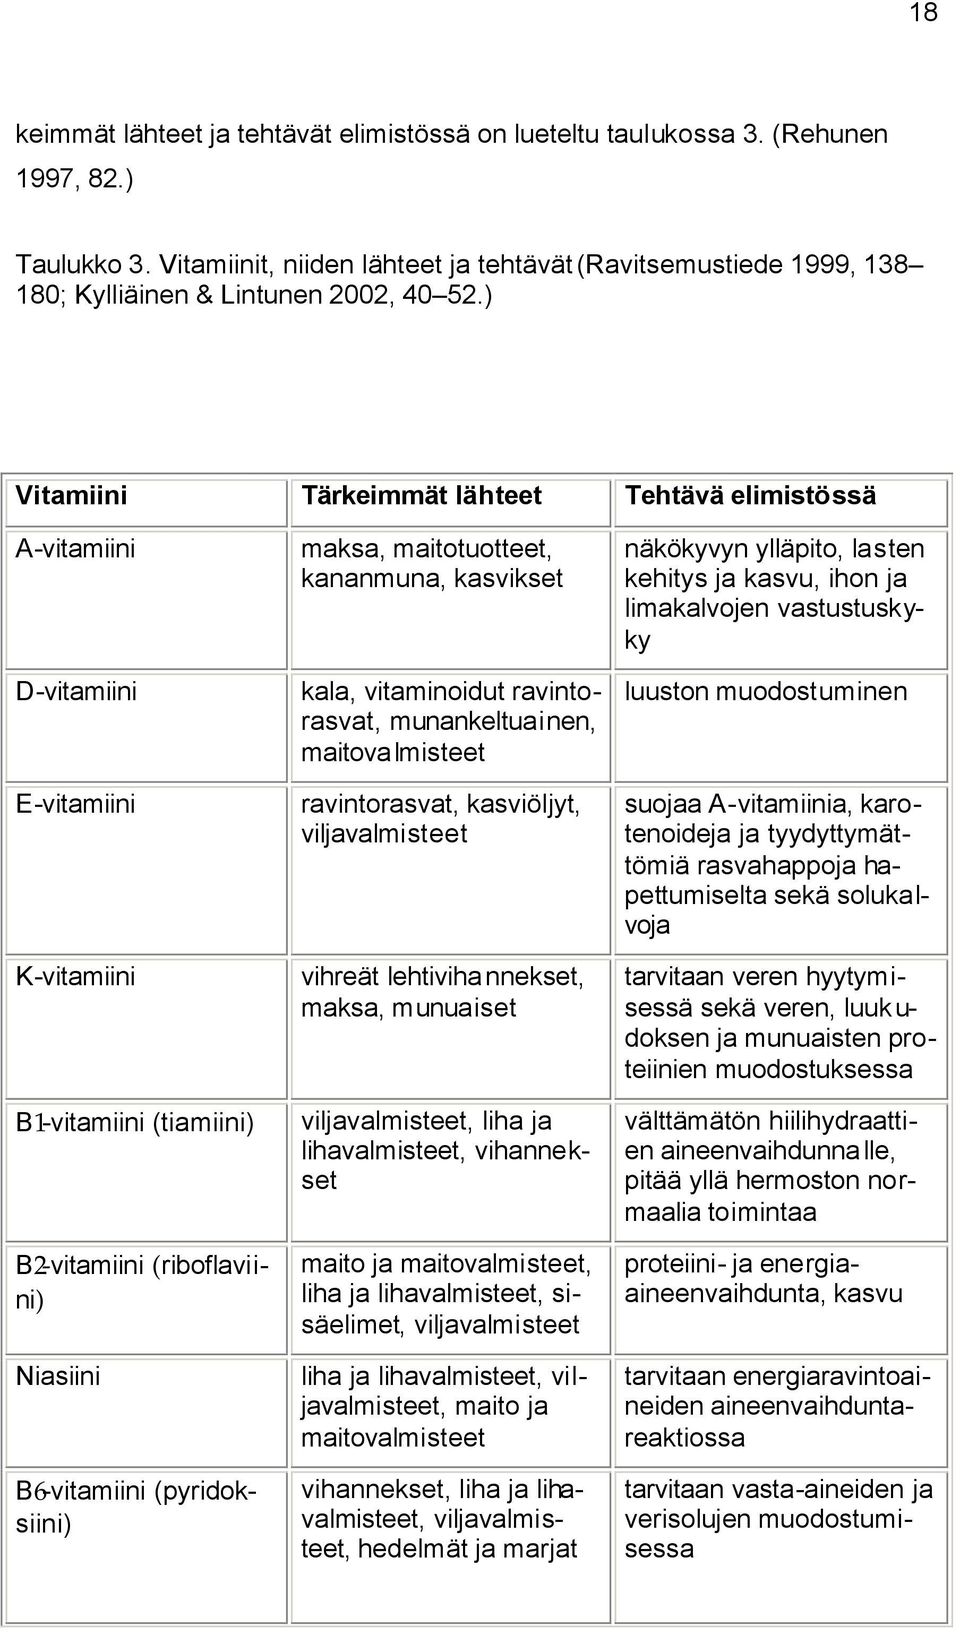 ) Vitamiini Tärkeimmät lähteet Tehtävä elimistössä A-vitamiini D-vitamiini E-vitamiini K-vitamiini B1-vitamiini (tiamiini) B2-vitamiini (riboflaviini) Niasiini B6-vitamiini (pyridoksiini) maksa,